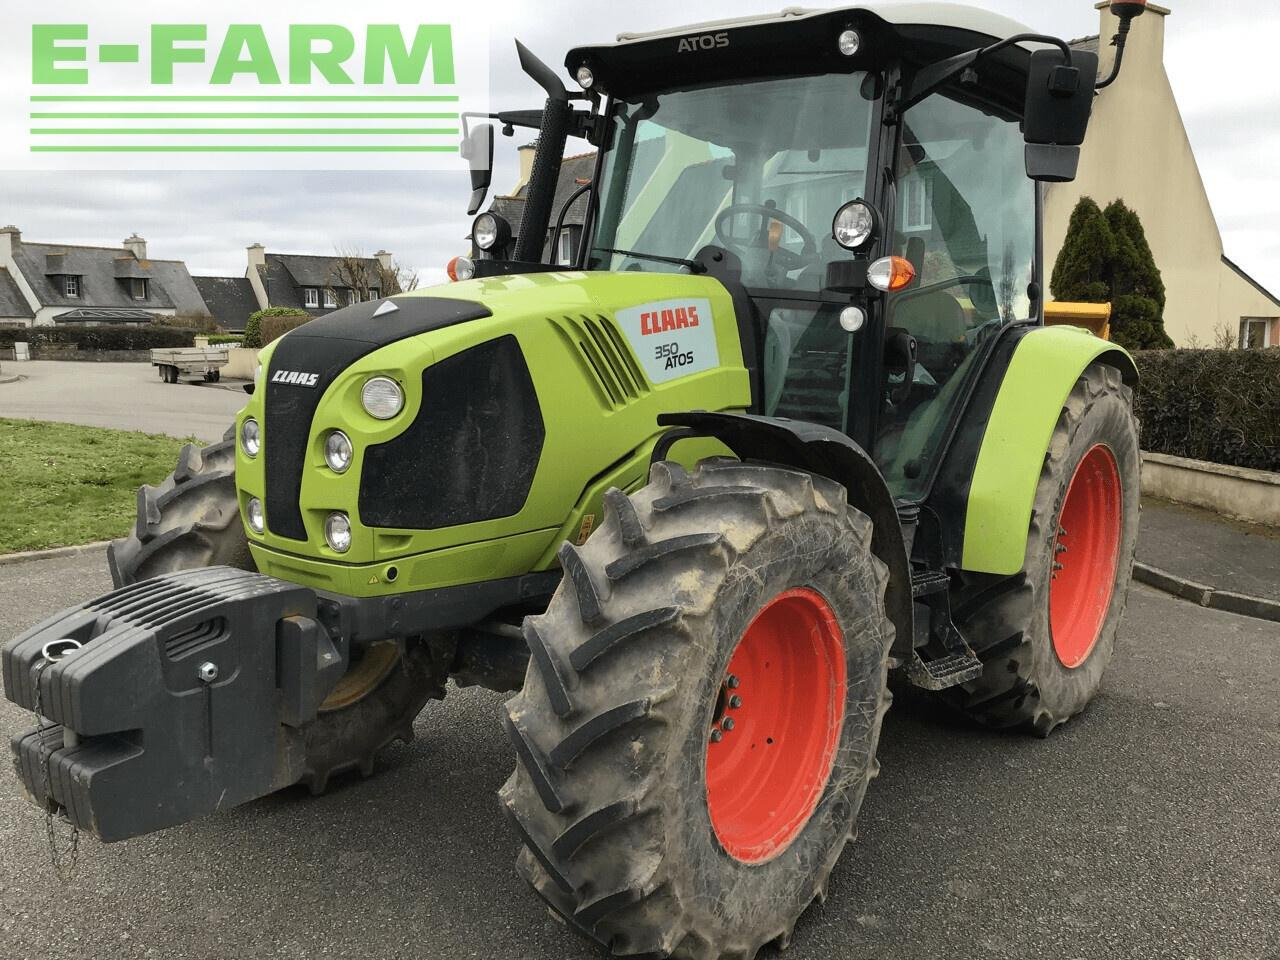 Farm tractor CLAAS atos 350 (a99/500)